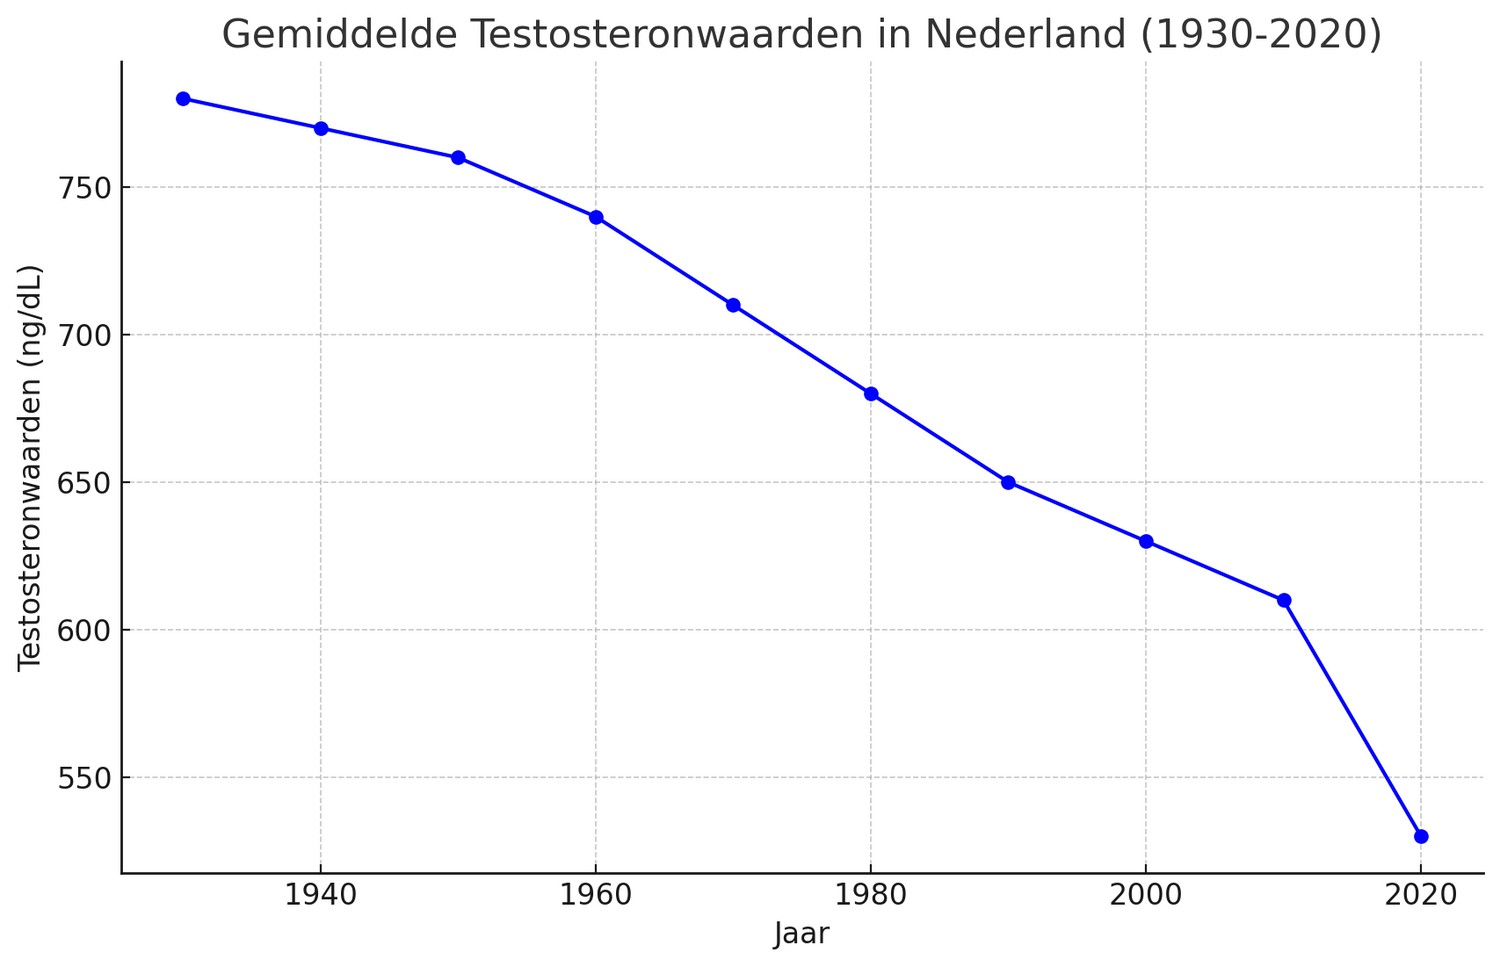 Grafiek die de daling van gemiddelde testosteronniveaus bij mannen van 1980 tot 2020 toont, met belangrijke mijlpalen en gegevenspunten die de neerwaartse trend in hormoonspiegels illustreren.